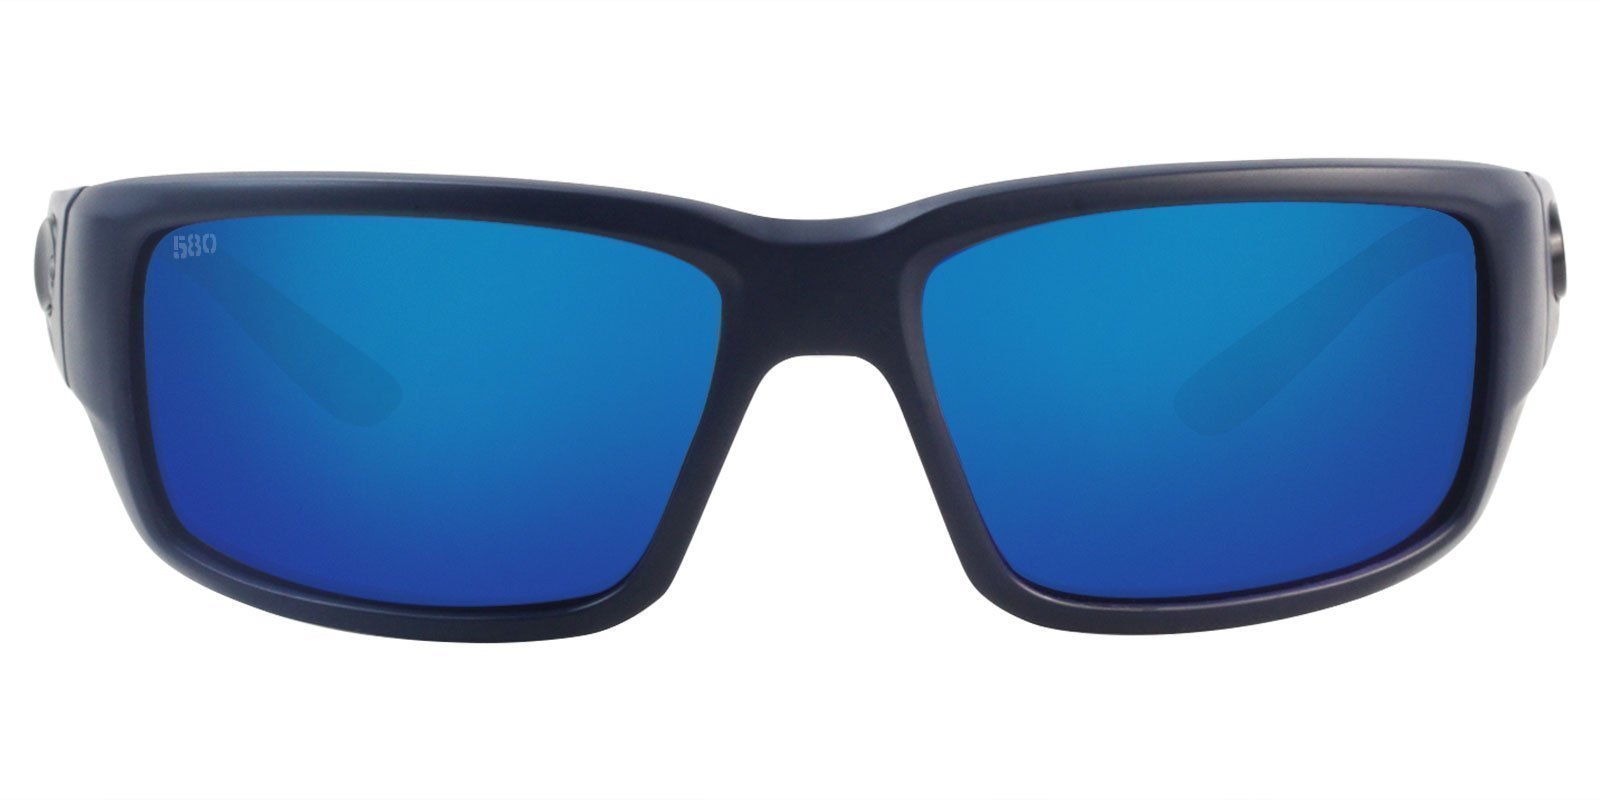 Which Costa Del Mar Sunglasses Are Best For Fishing? : Top 5 Costa Del ...